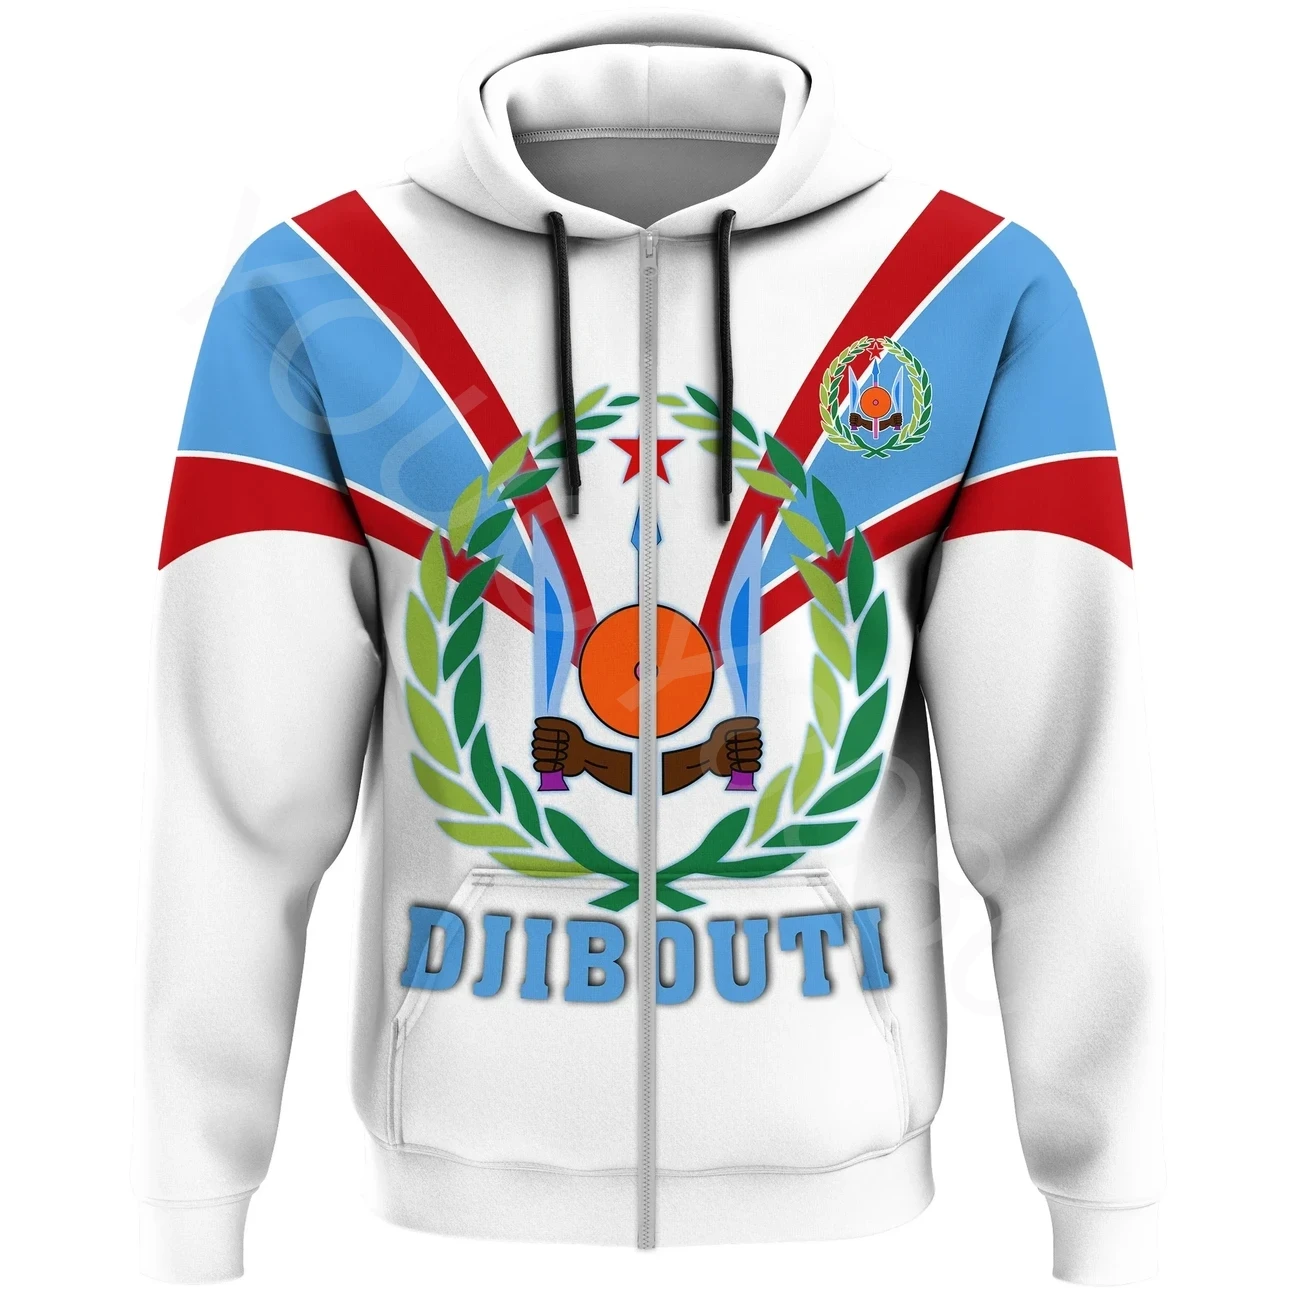 

African Region Togo Hoodie Djibouti Hoodie - Fangs Style Zip Hoodie Fall Men's Clothing Sweatshirt 3D Printed Casual Sports Top